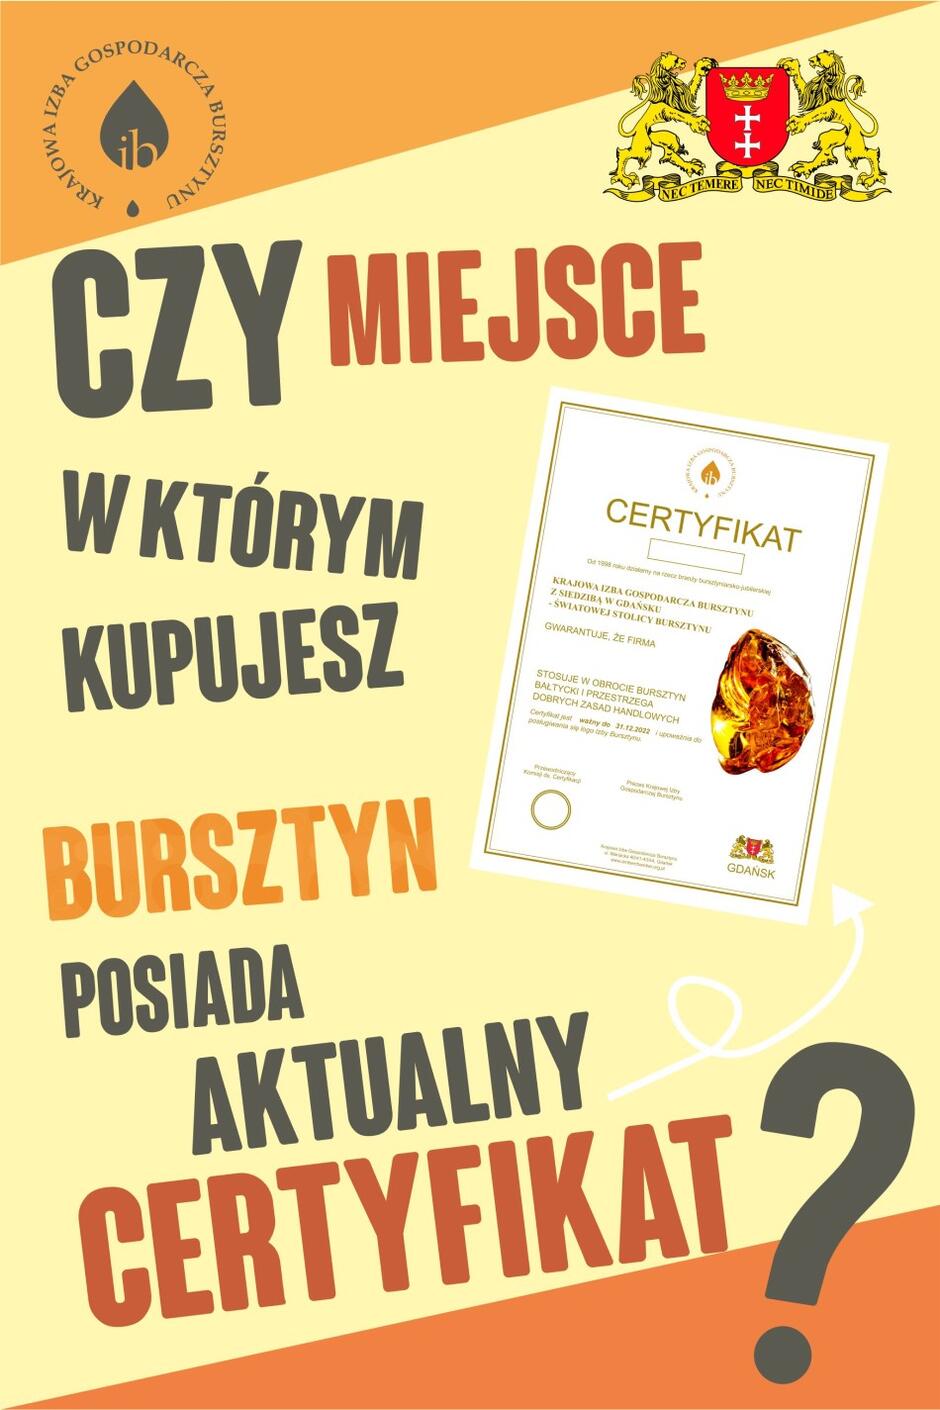 Plakaty Krajowej Izby Gospodarczej Bursztynu oraz Miasta Gdańsk można zobaczyć m.in. na przystankach komunikacji miejskiej